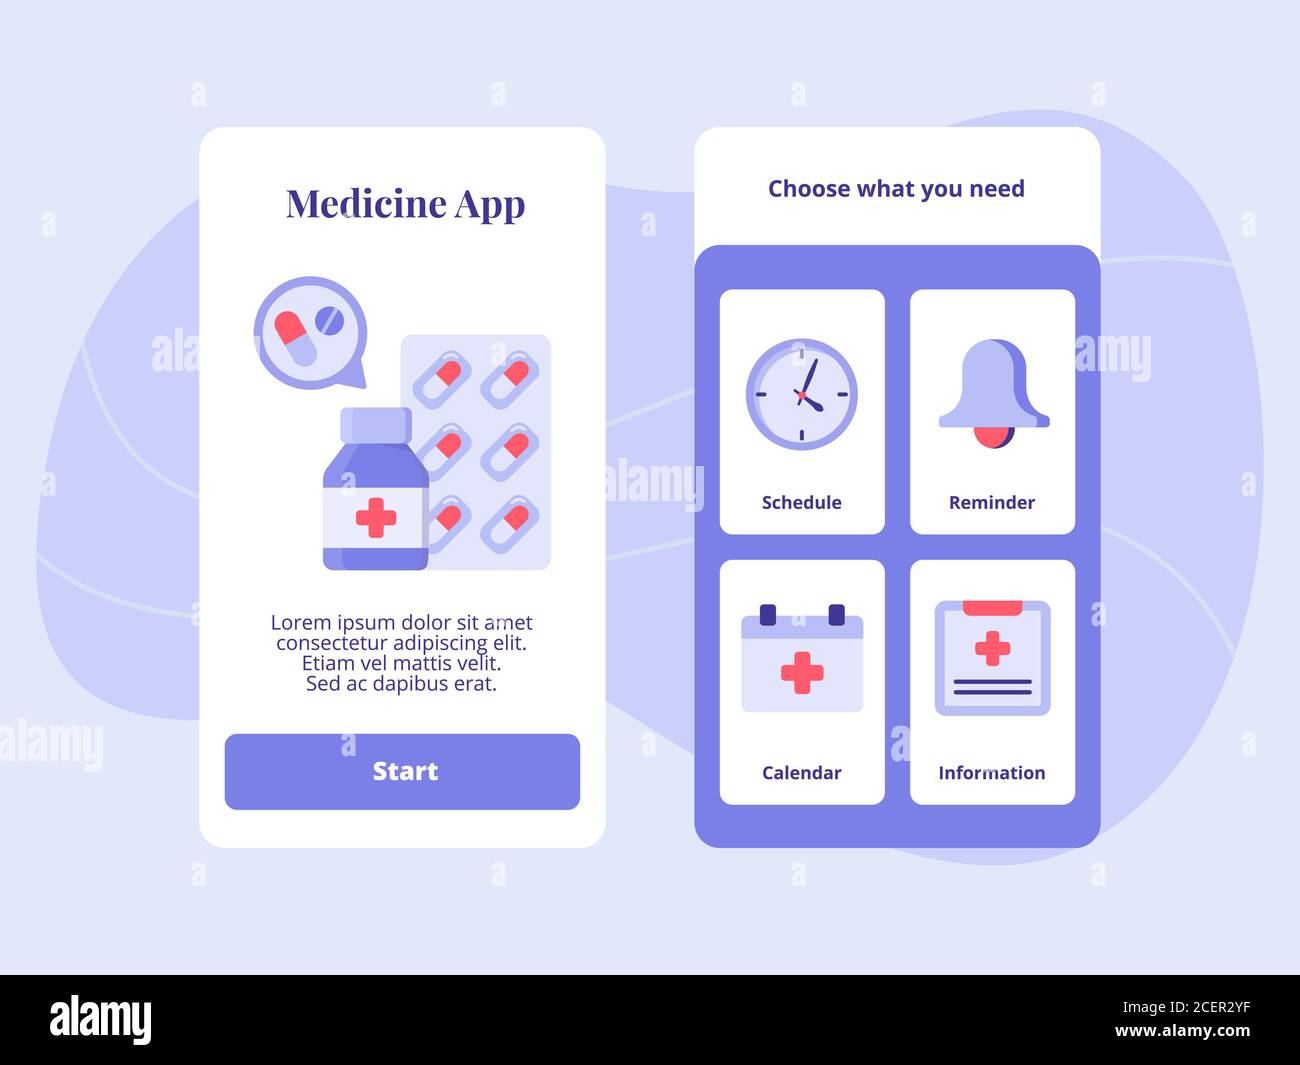 Medicine App Zeitplan Erinnerung Kalender Informationen für mobile Apps Vorlage Bannerseite UI mit zwei Varianten moderner flacher Farbstil Stock Vektor